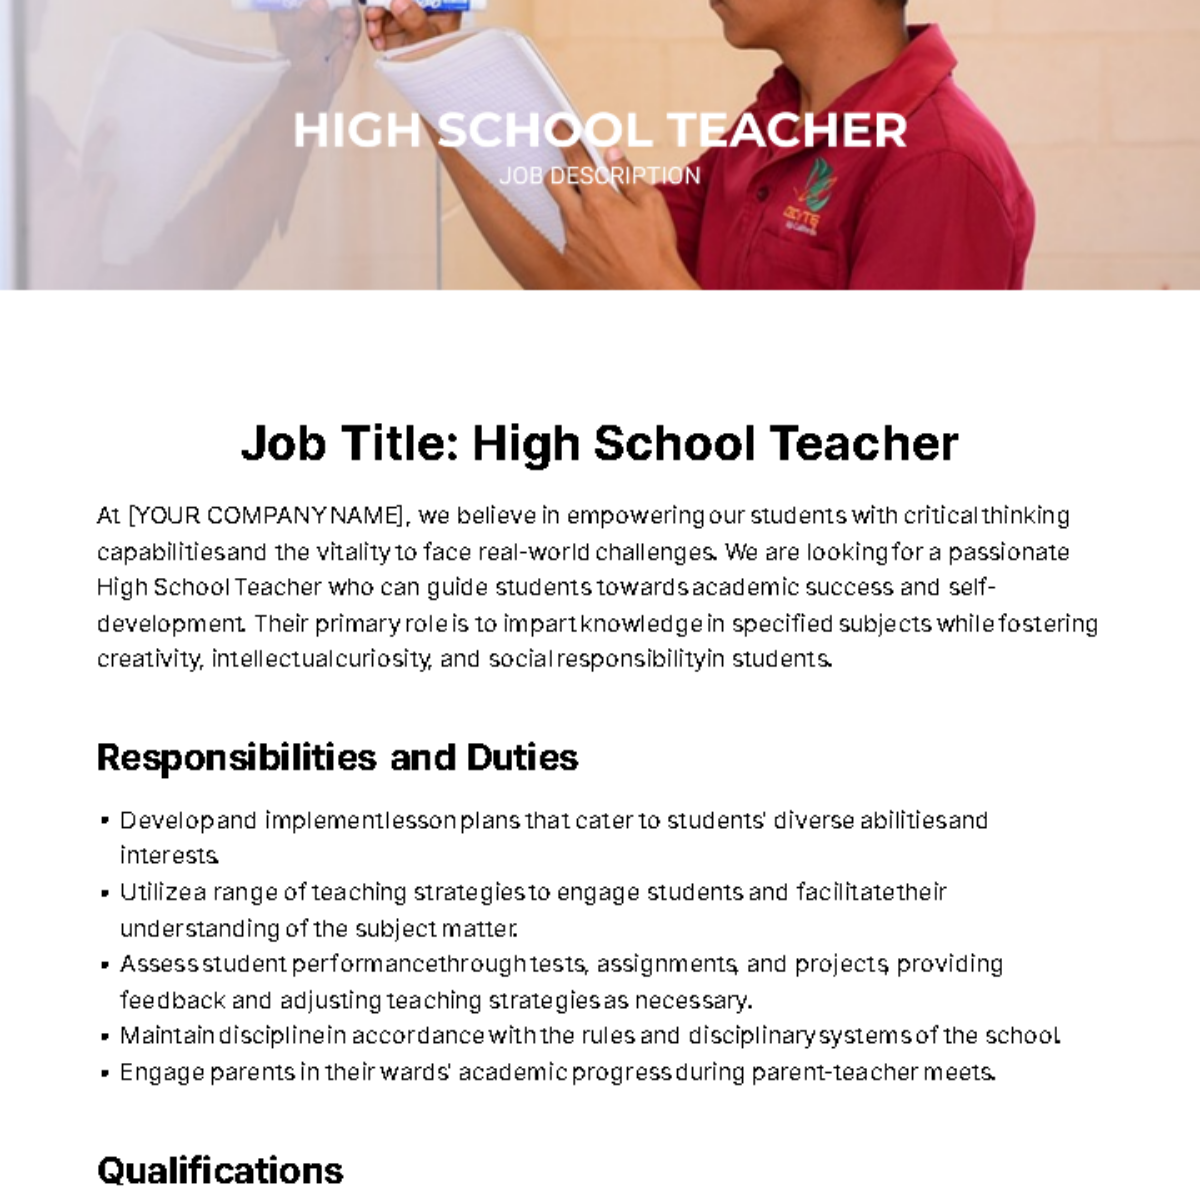 High School Teacher Job Description Template